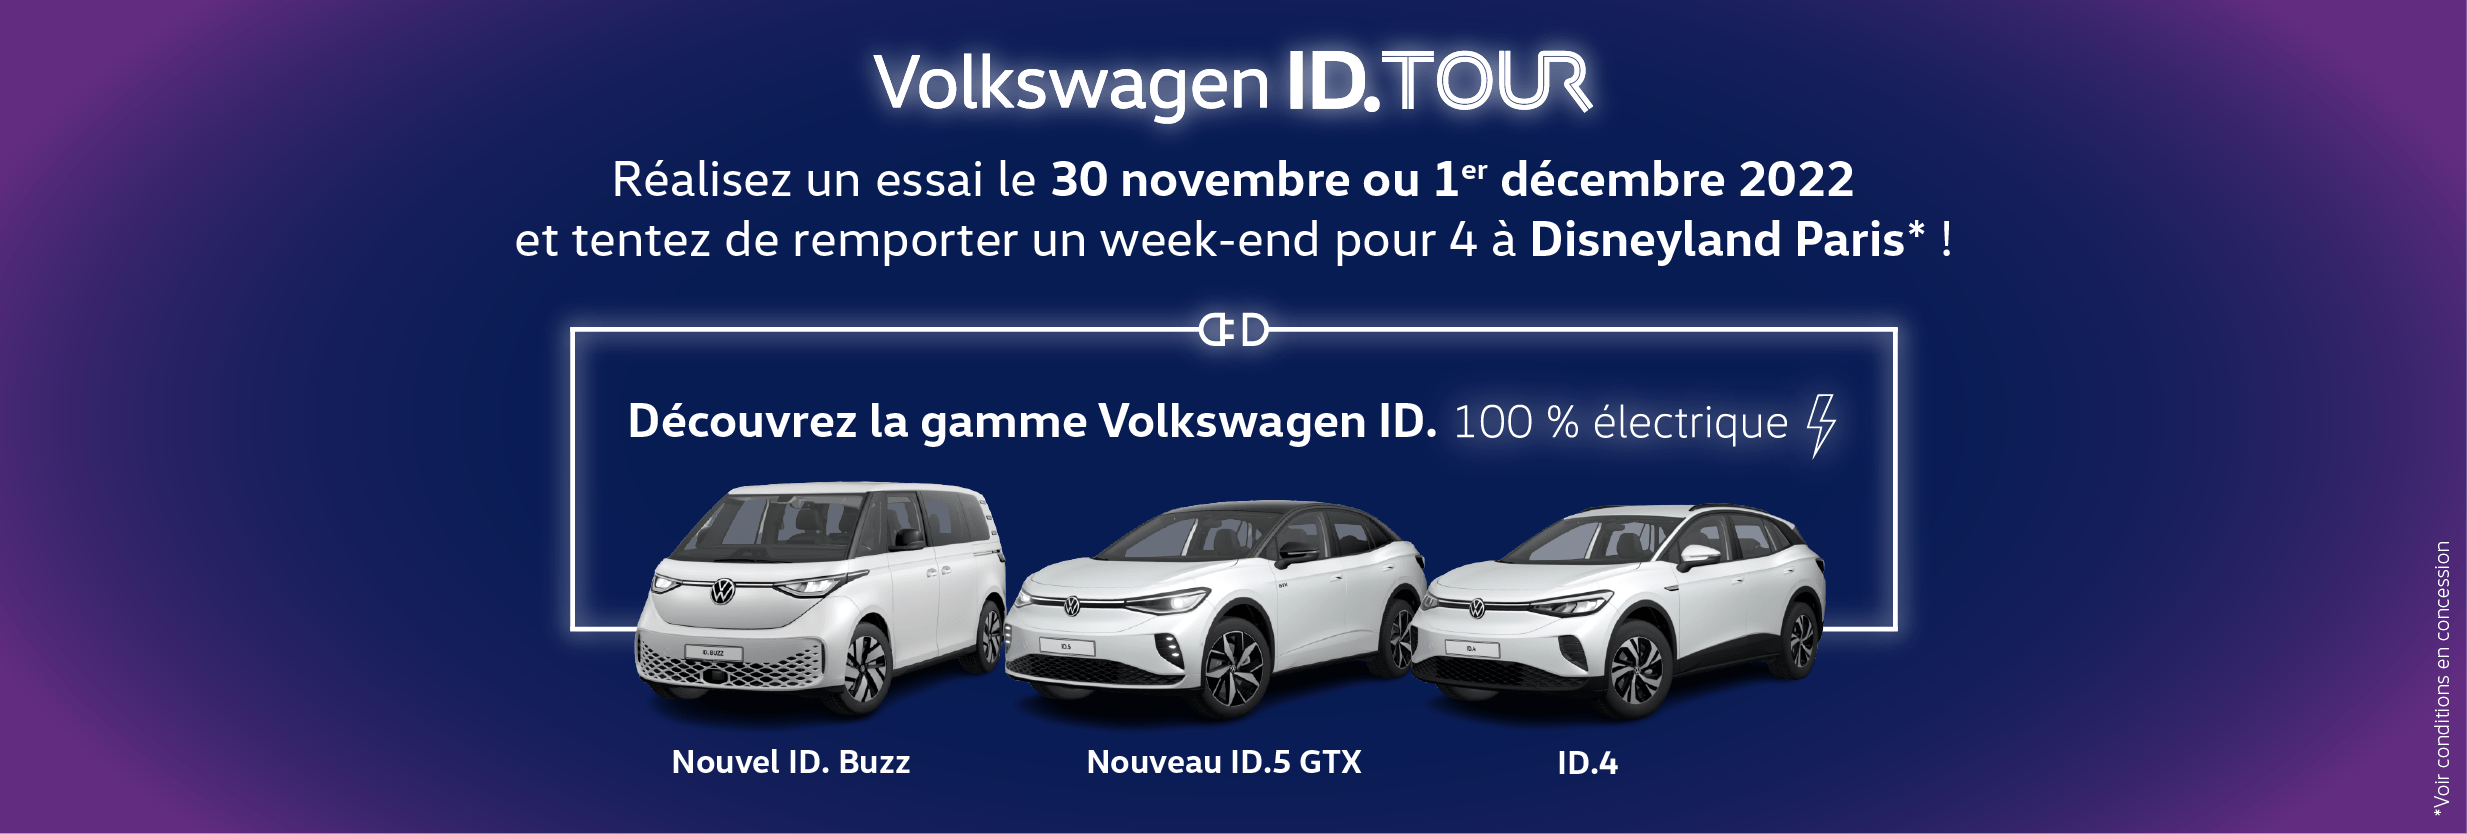 Volkswagen Hazebrouck AUTO-EXPO - Tentez de gagner un séjour à Disneyland pour 4 personnes avec l'ID Tour !